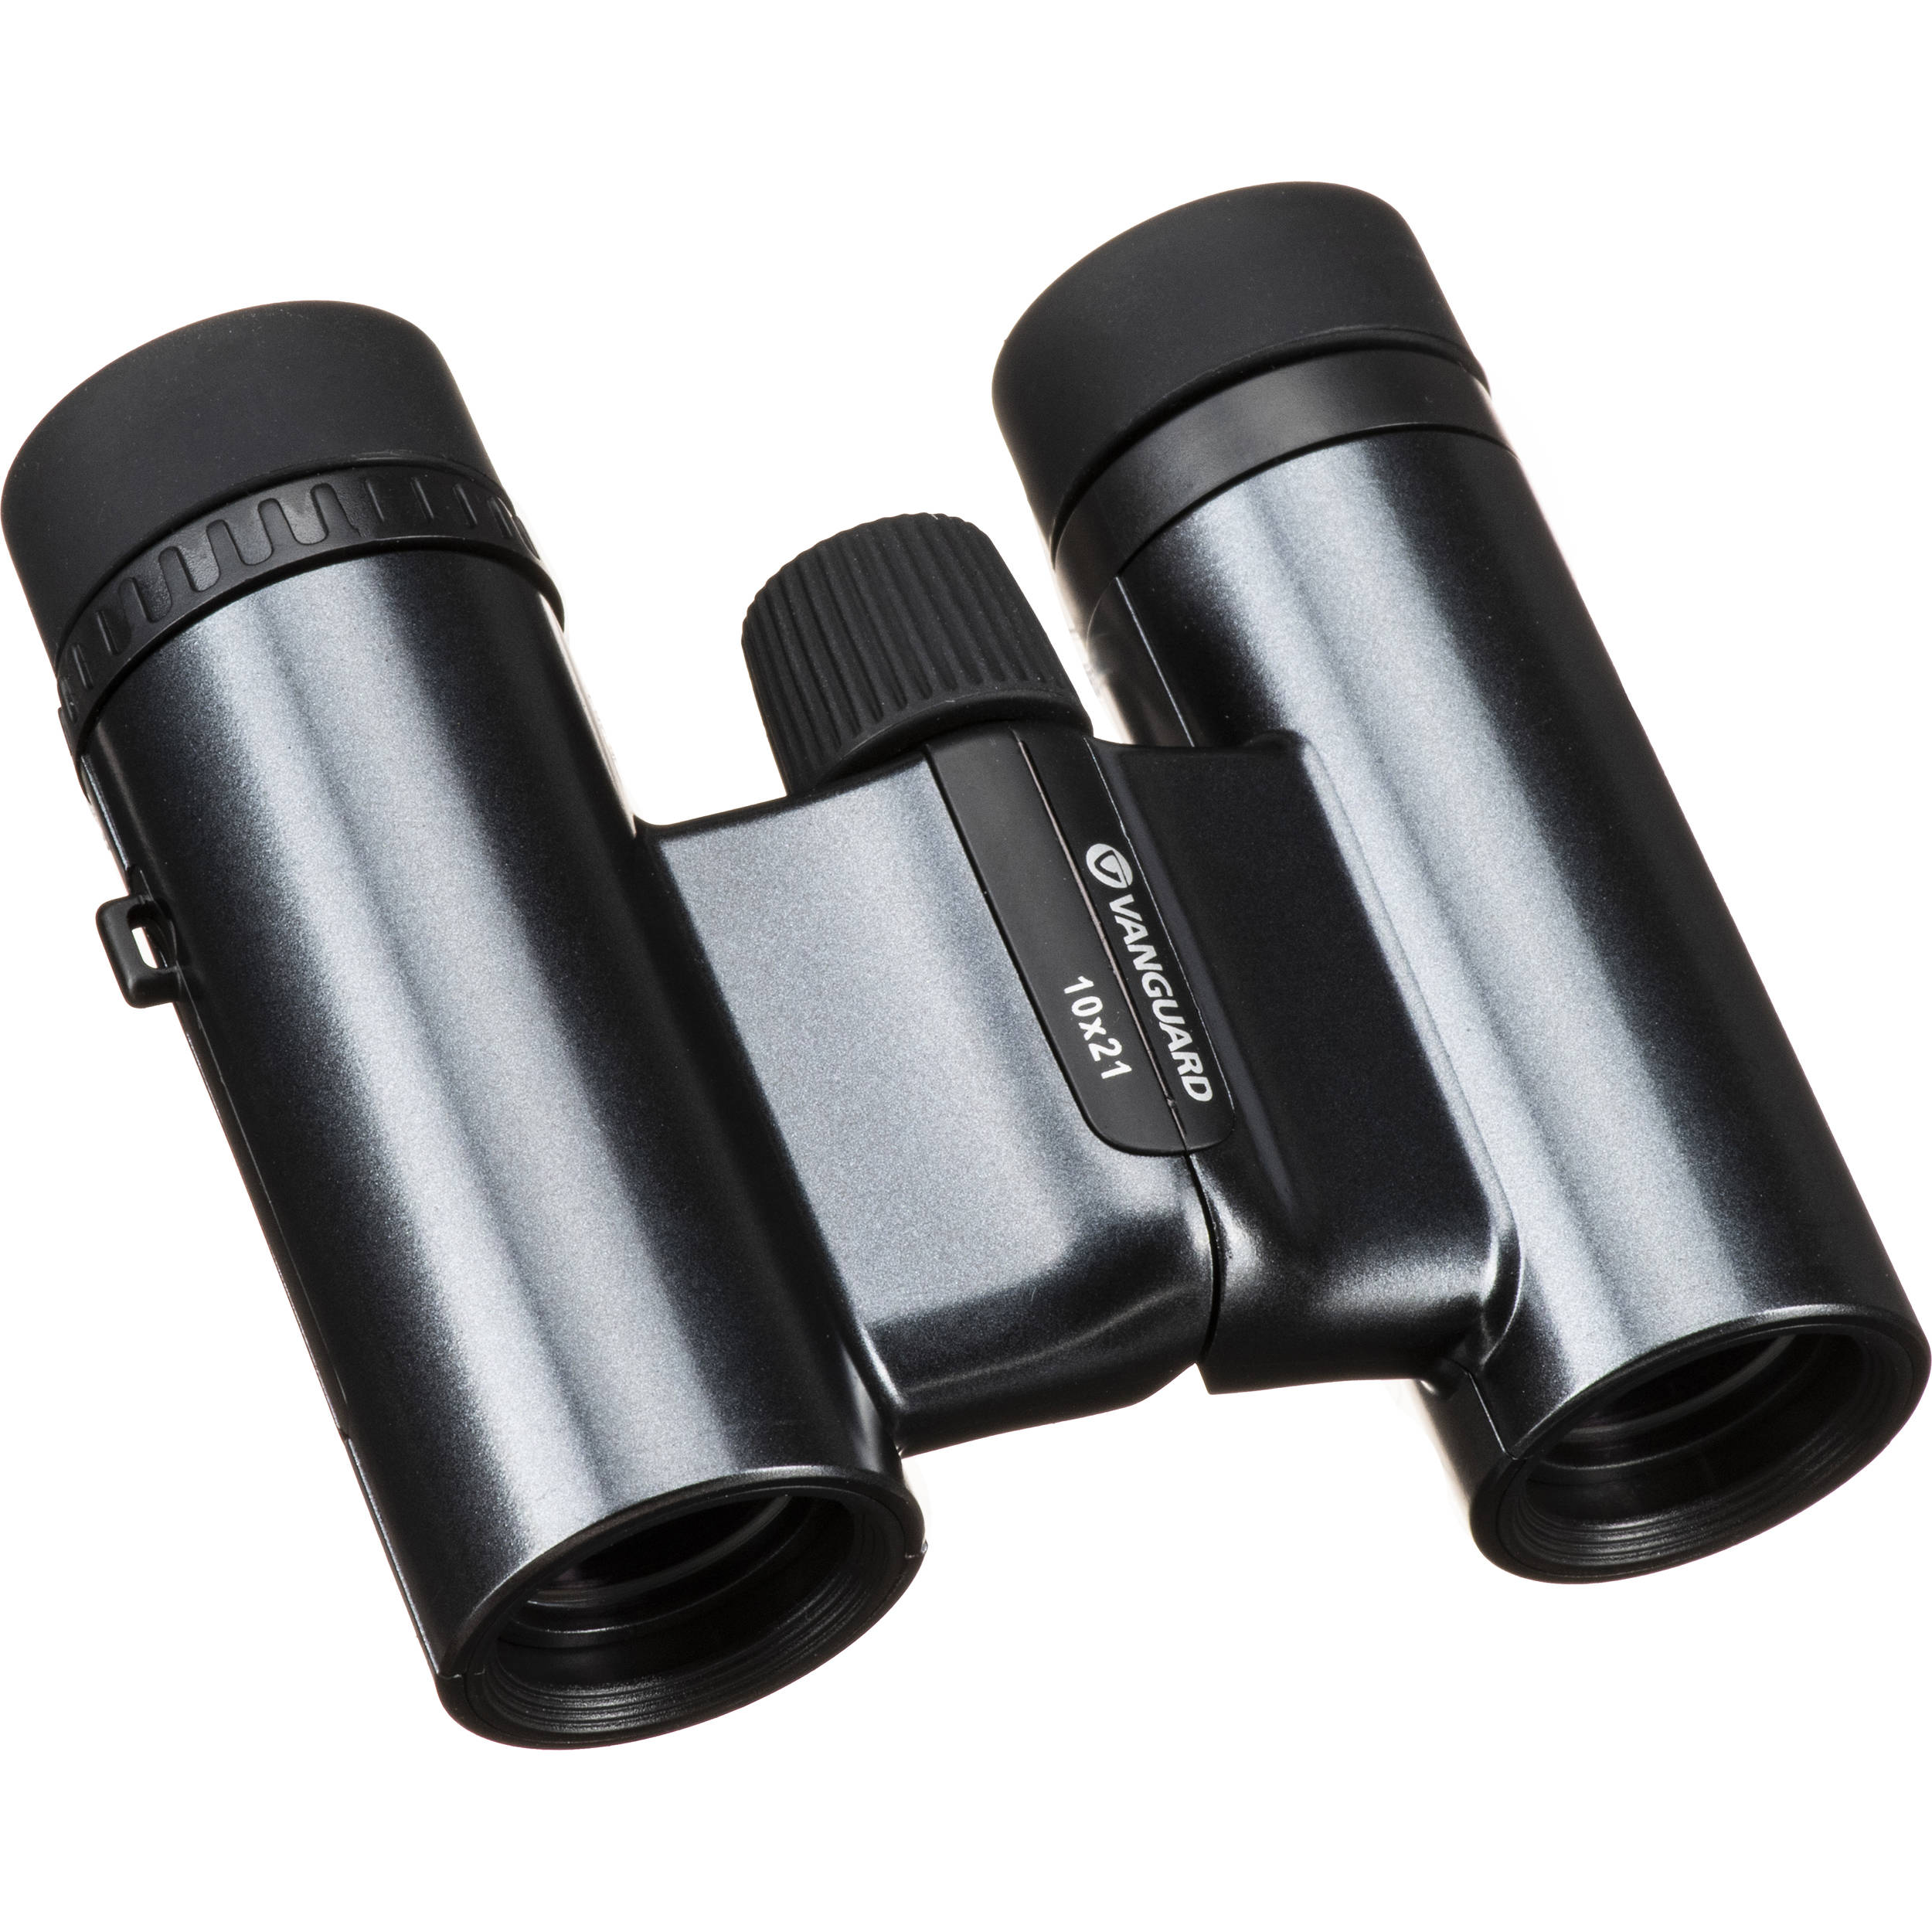 10x21 binoculars